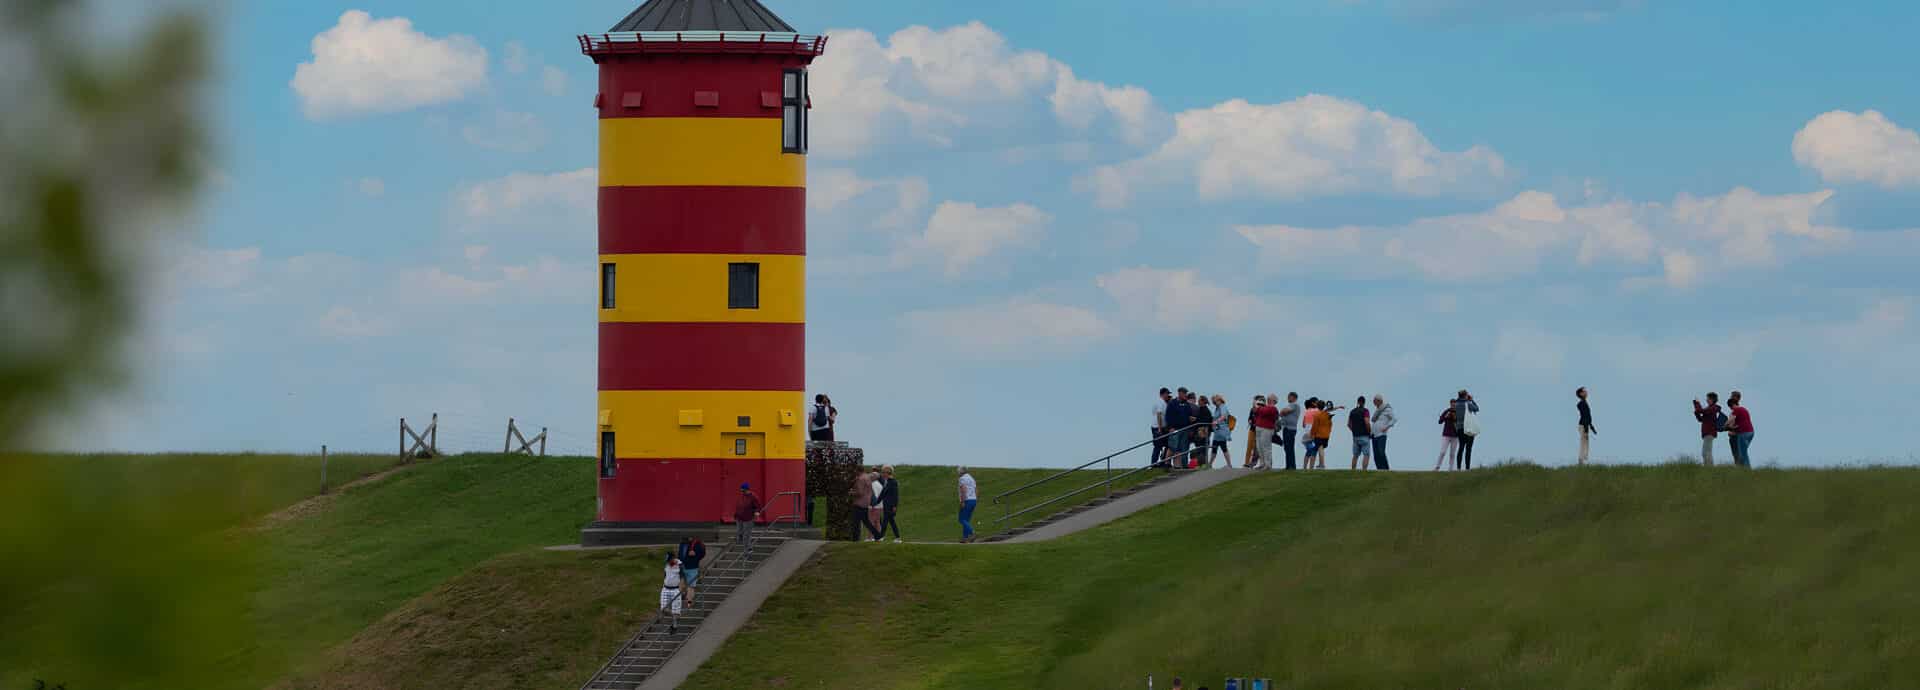 Pilsumer Leuchtturm mit Touristen am Deich